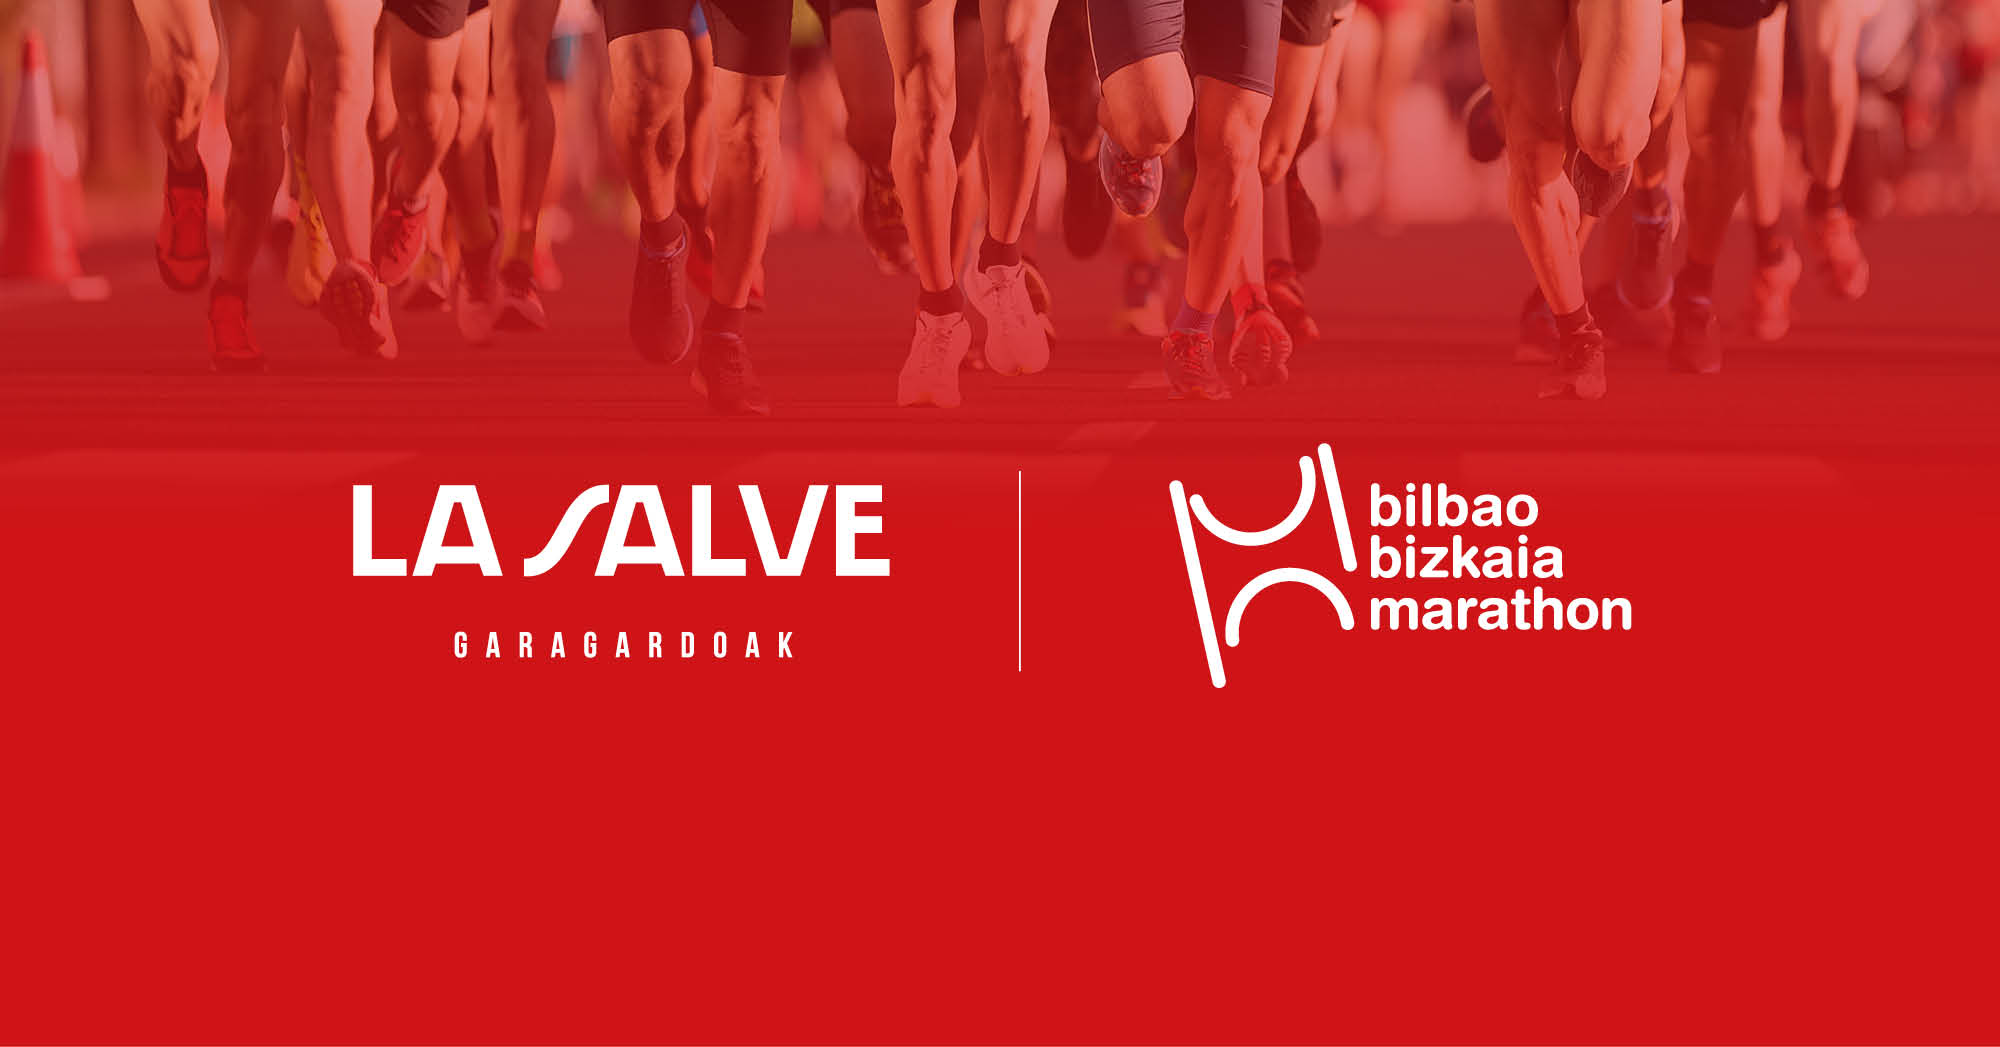 Patrocinio LA SALVE - Bilbao Bizkaia Marathon - LA SALVE Bilbao